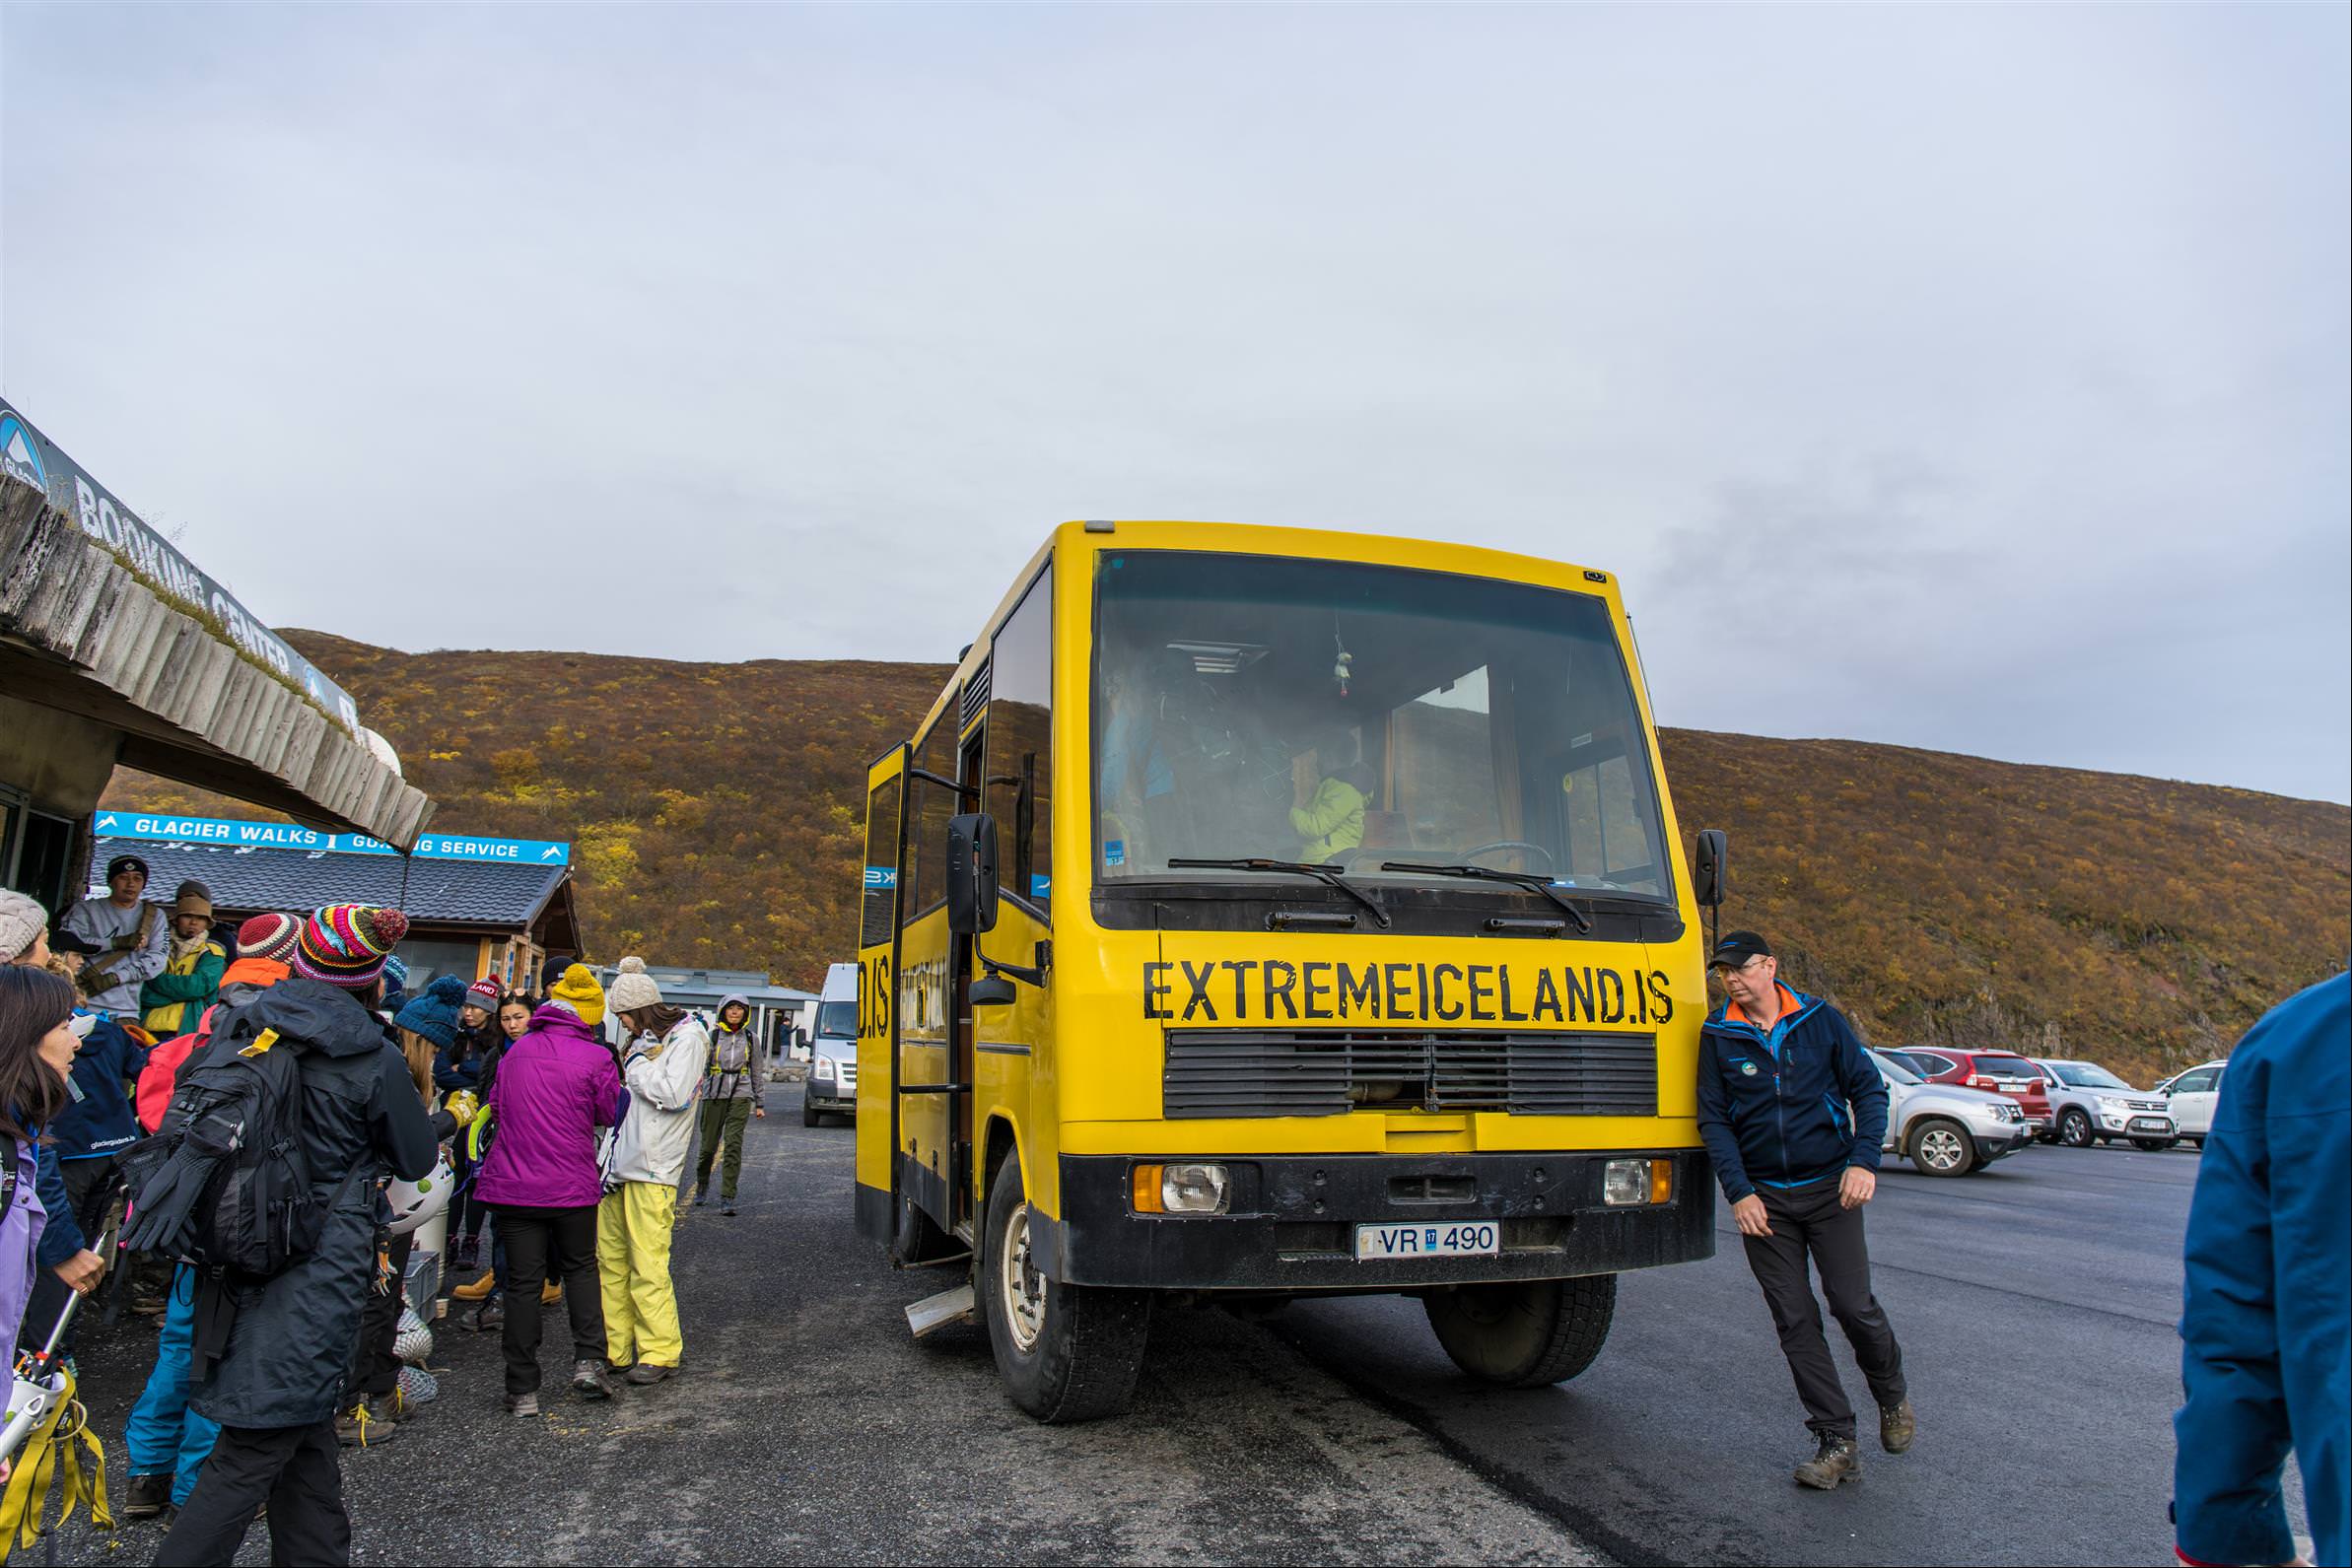 [冰島/教學] 冰川健行 Glacier Hikes 訂票、體驗、教學，冰島熱門體驗戶外活動。